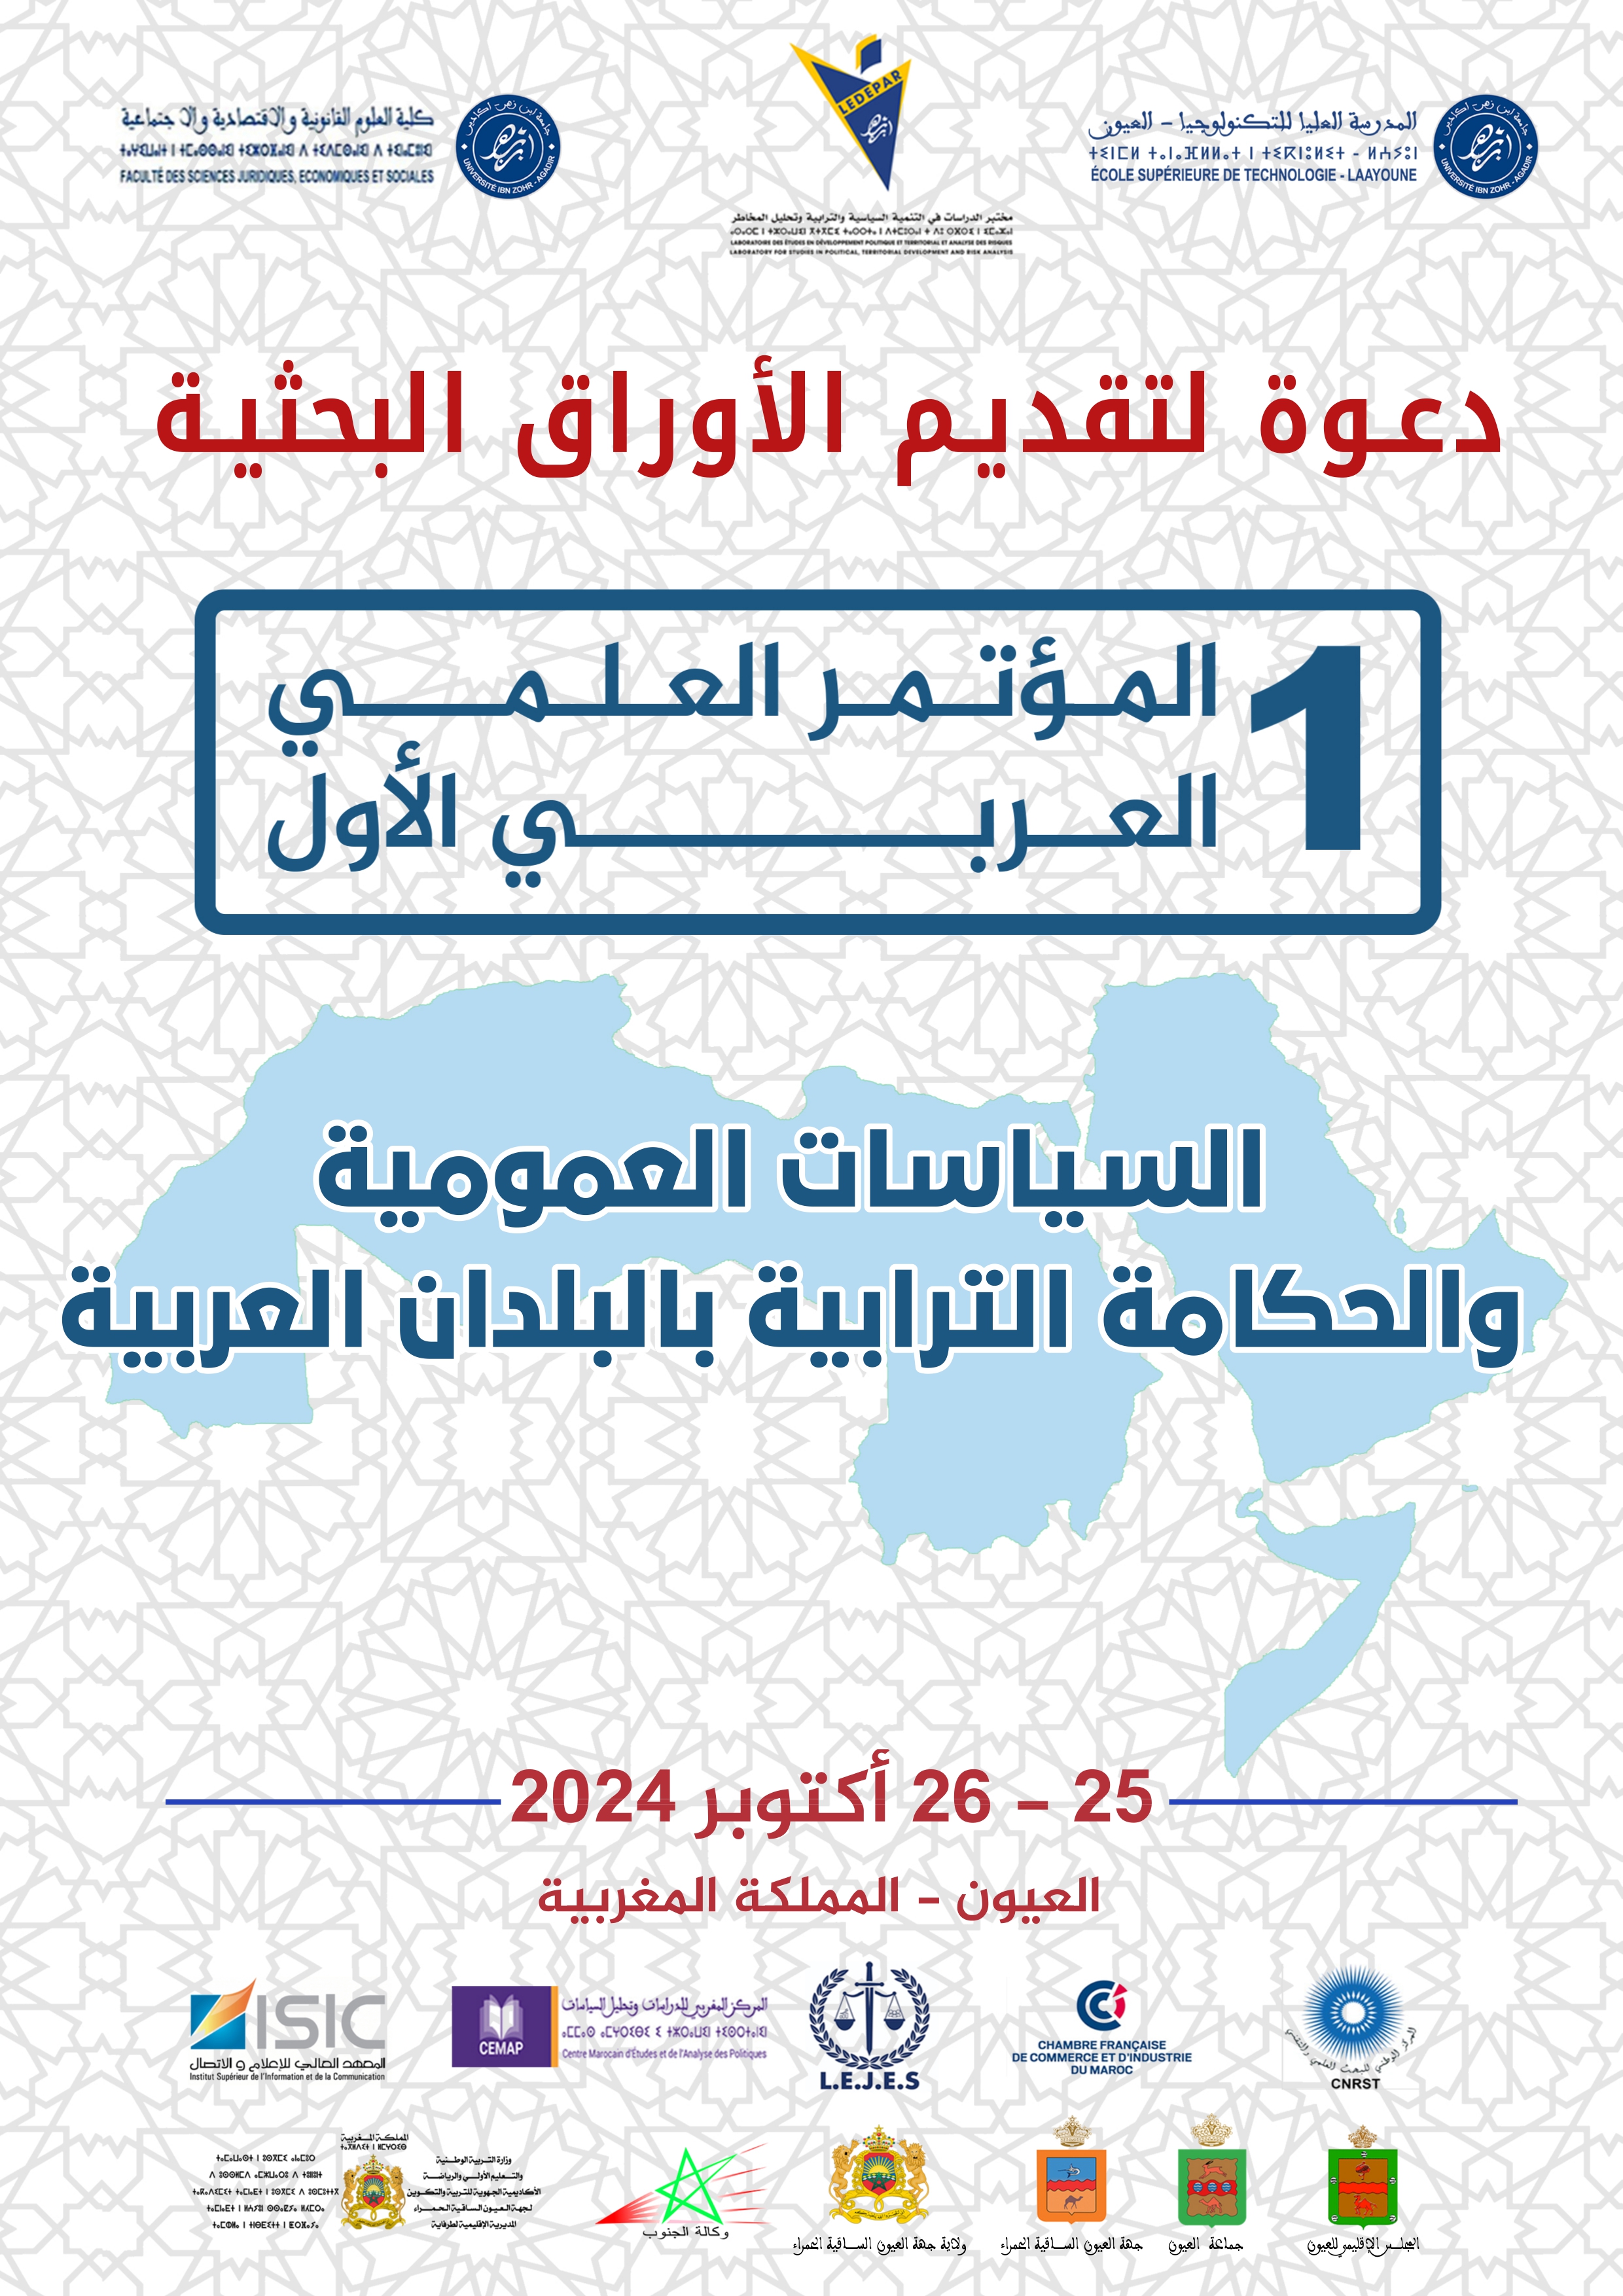 دعوة لتقديم الاوراق البحثية للمؤتمر العلمي العربي الأول